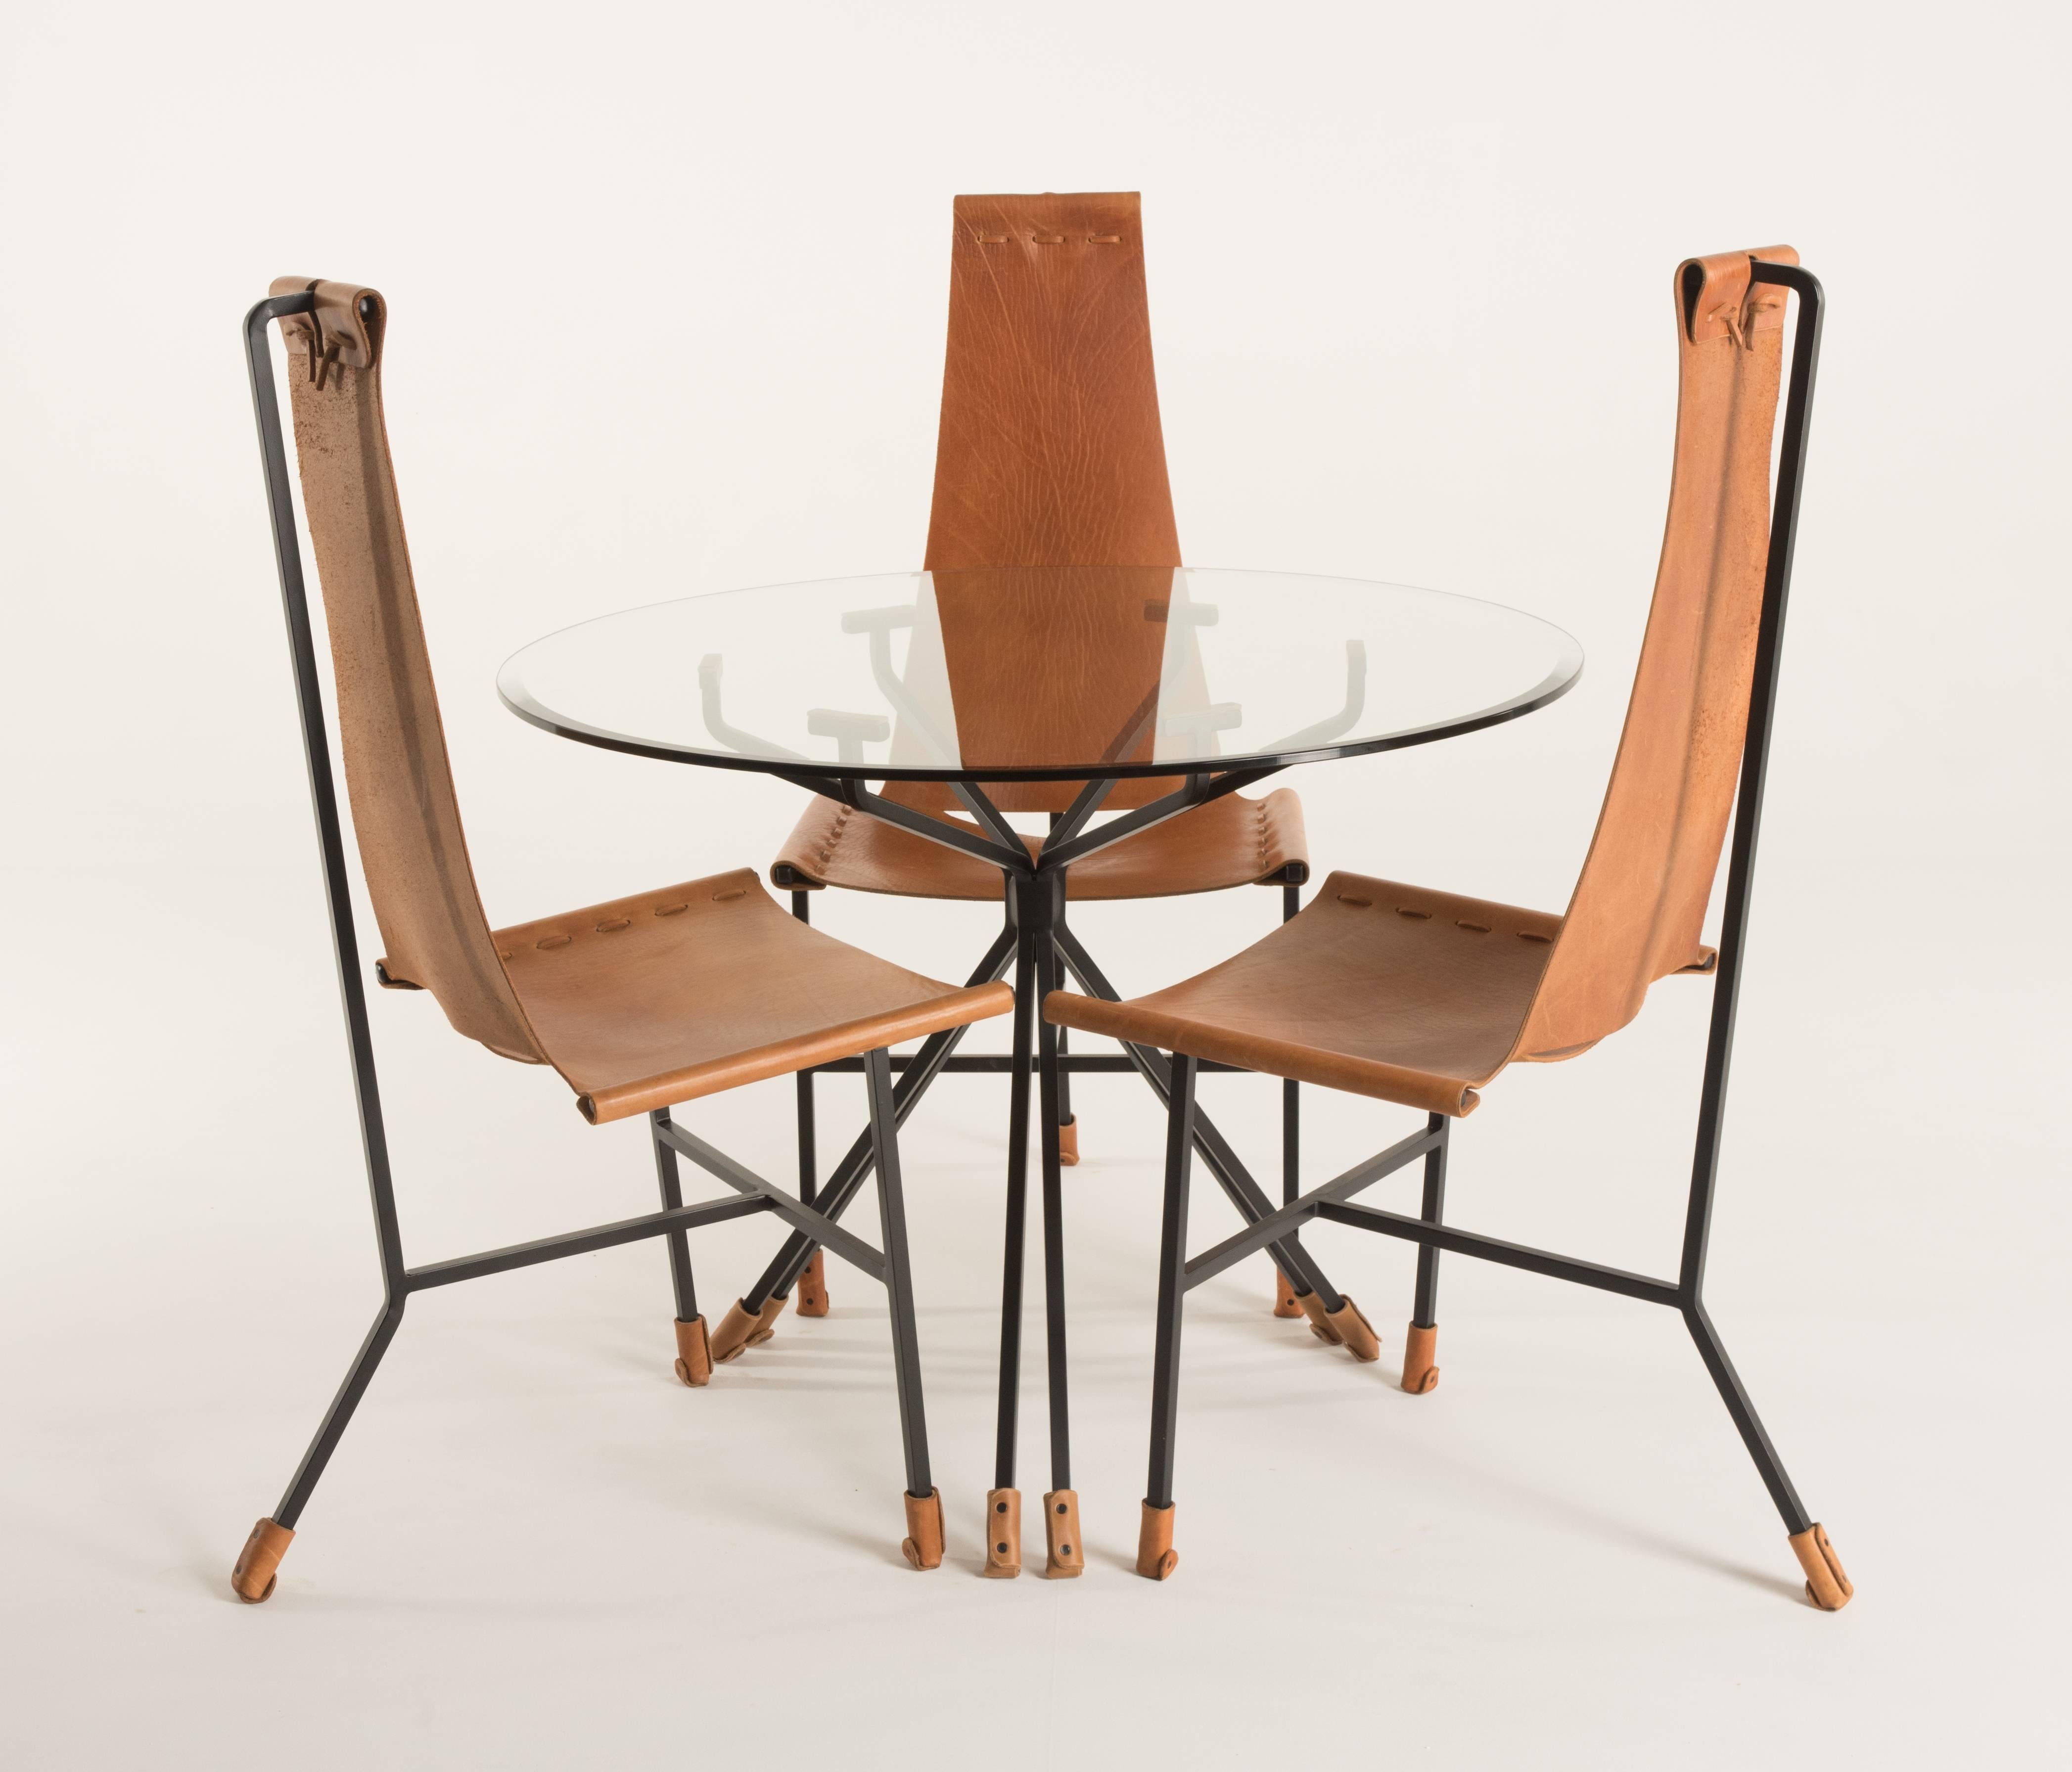 Hier bieten wir ein Set aus drei Dan Wenger Designs Esszimmerstühlen und einem Tisch mit Glasplatte an. Das Leder kann in Schwarz, Cognac, Rot und Dunkelbraun gewählt werden. Der Rahmen ist schwarz lackiert. Die Abmessungen der Stühle sind
Maße: 21